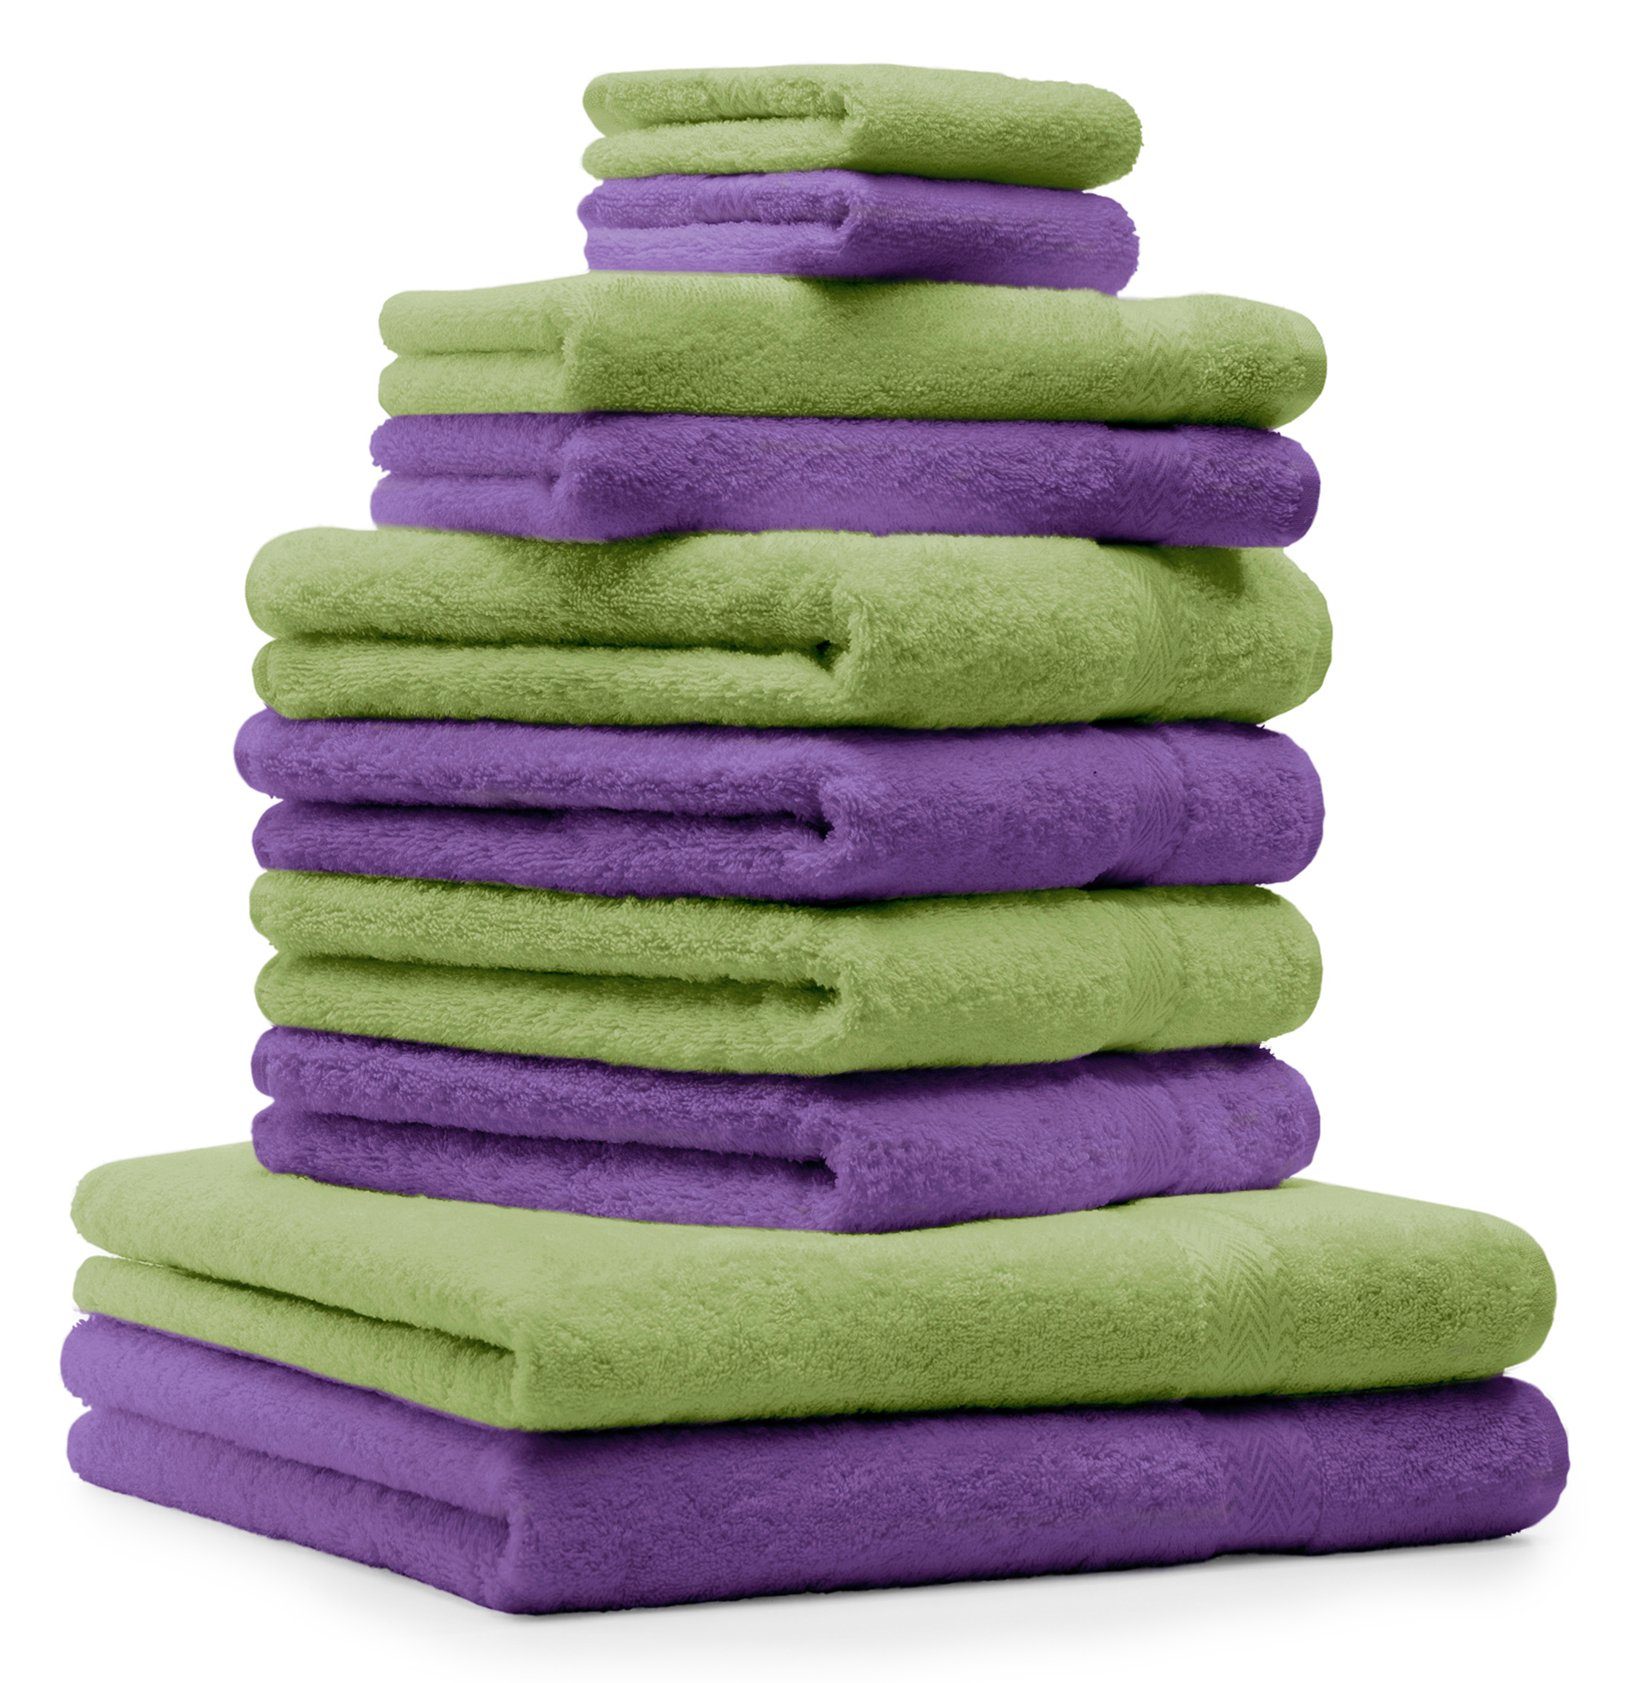 Betz Handtuch Set 10-TLG. Handtuch-Set Premium 100% Baumwolle 2 Duschtücher 4 Handtücher 2 Gästetücher 2 Waschhandschuhe Farbe Apfel Grün & Lila, 100% Baumwolle, (10-tlg)